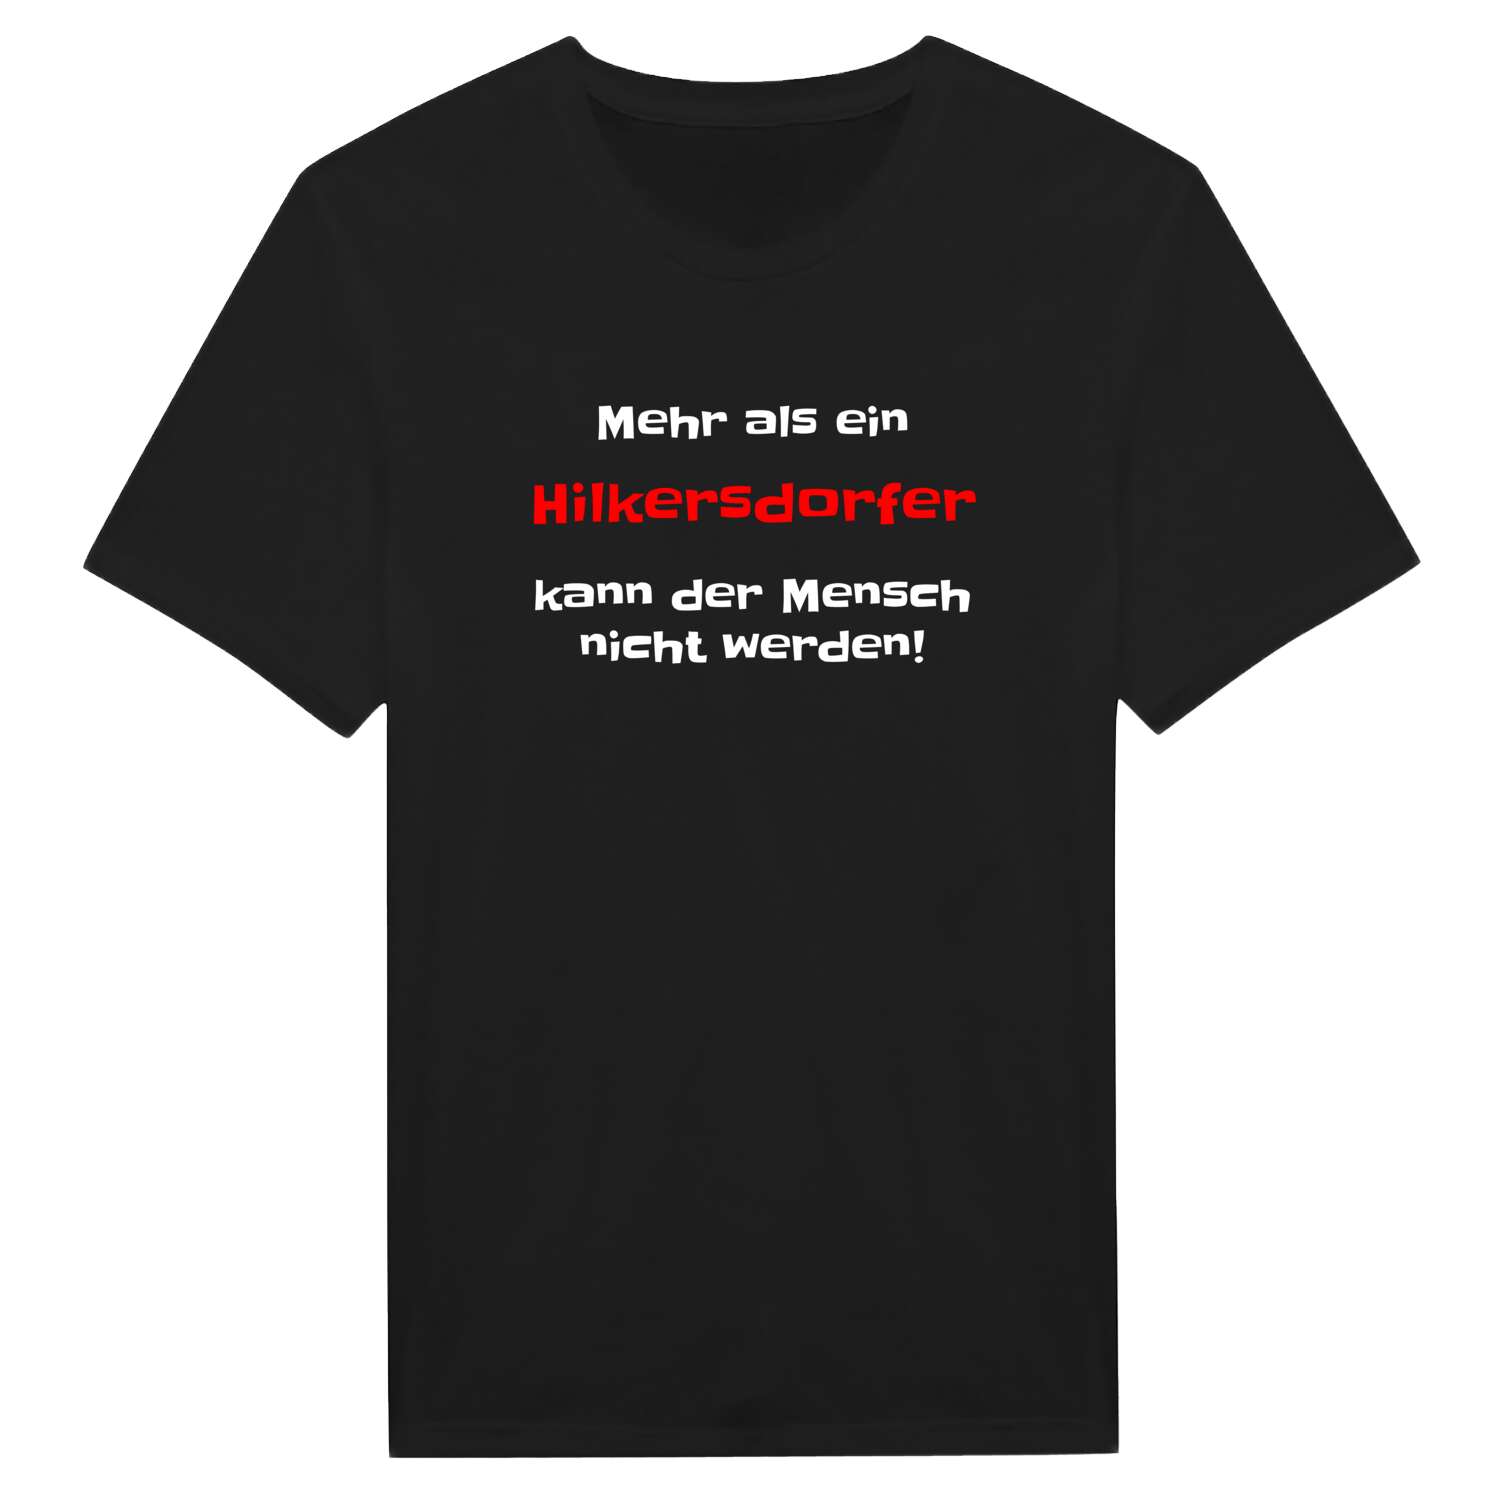 Hilkersdorf T-Shirt »Mehr als ein«